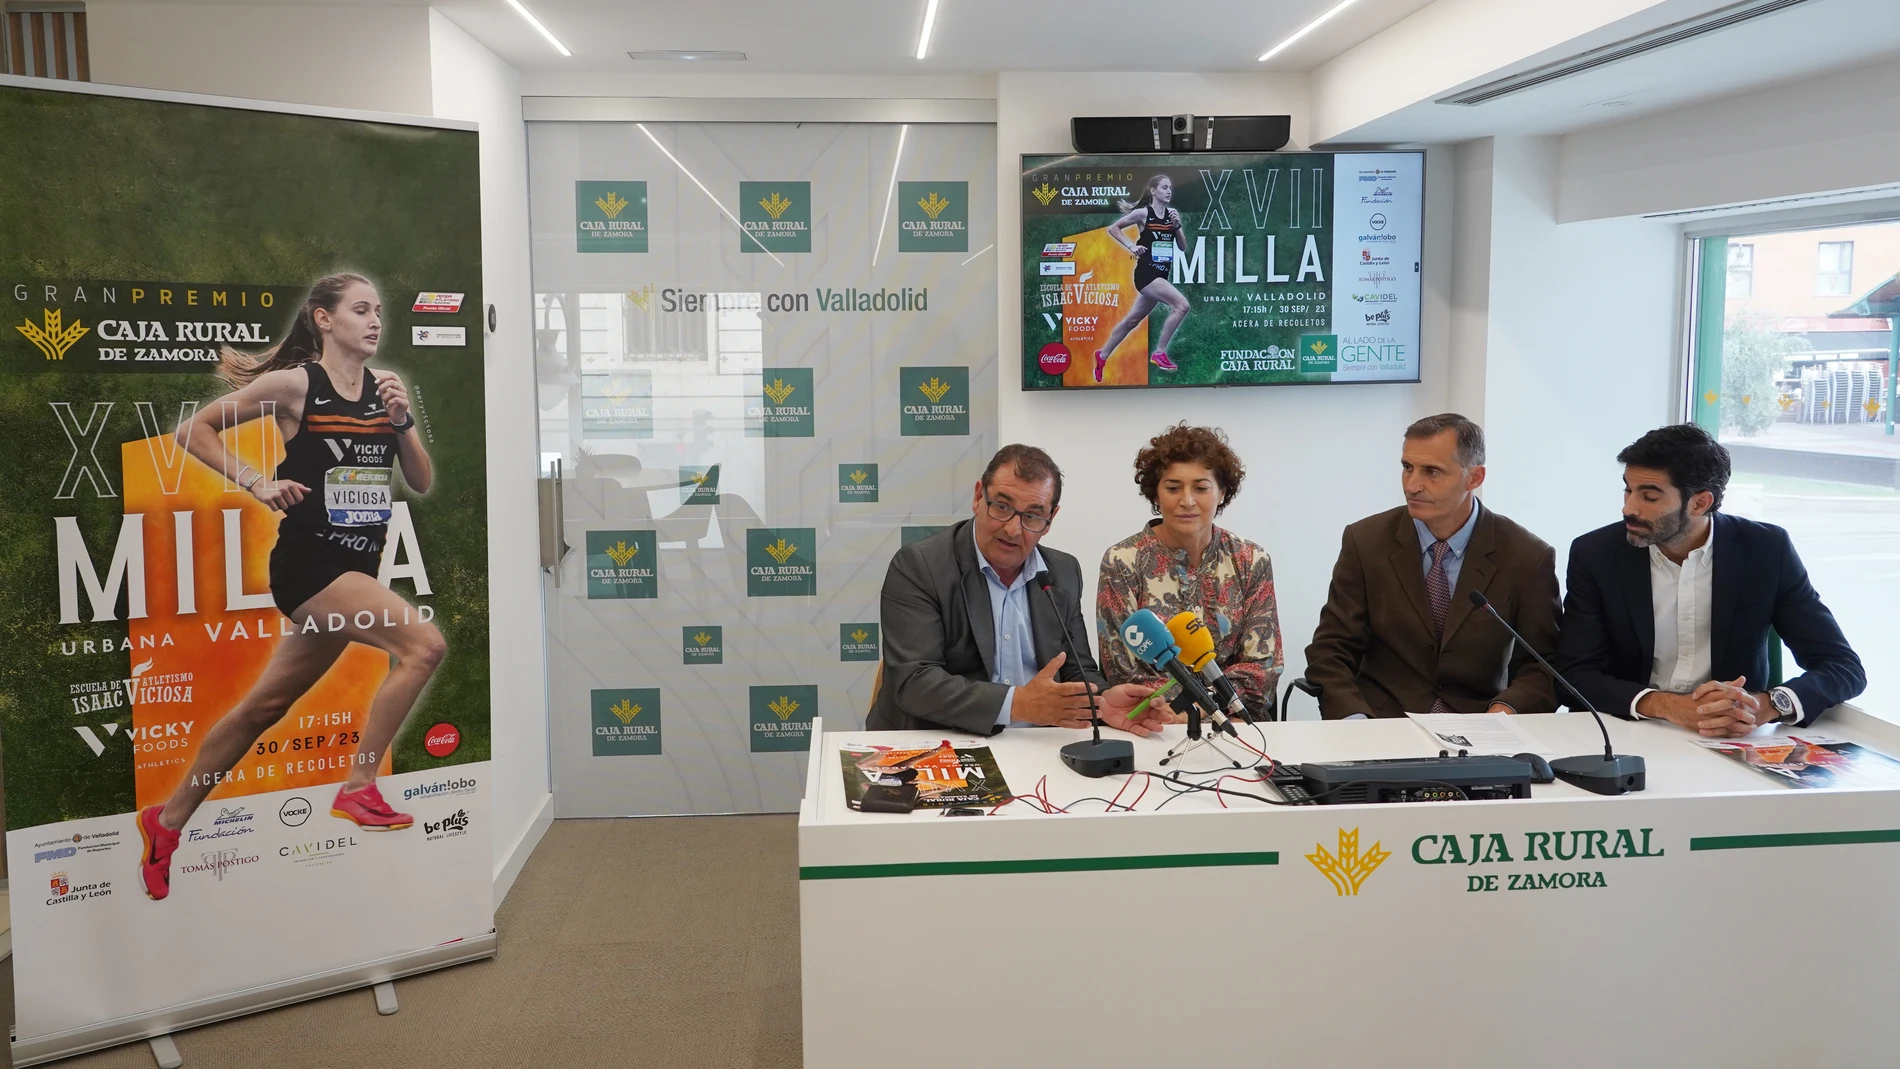 Presentación de la XXVI Milla Urbana de Valladolid Gran Premio Caja Rural de Zamora